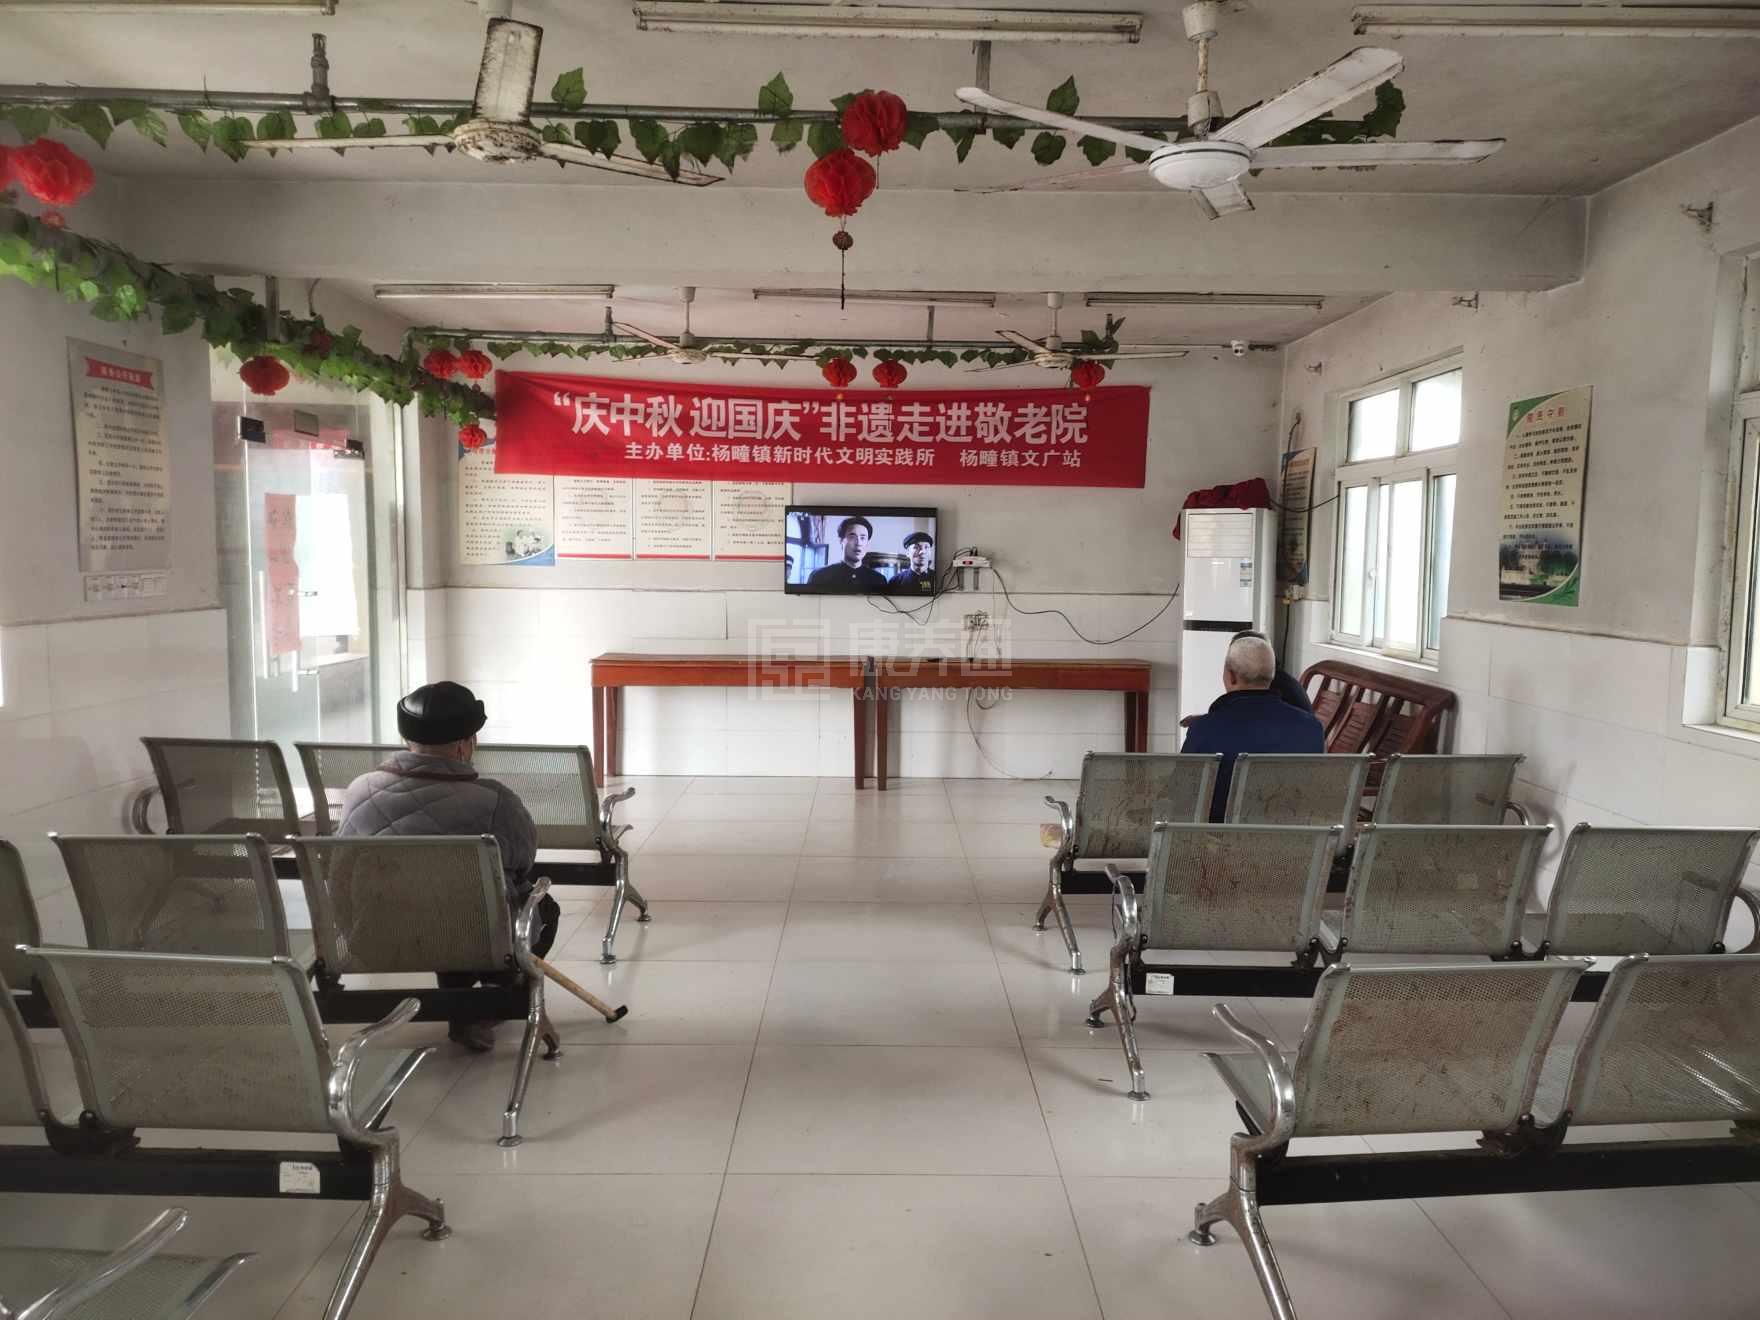 灵璧县杨疃镇养老服务中心服务项目图4让长者主动而自立地生活